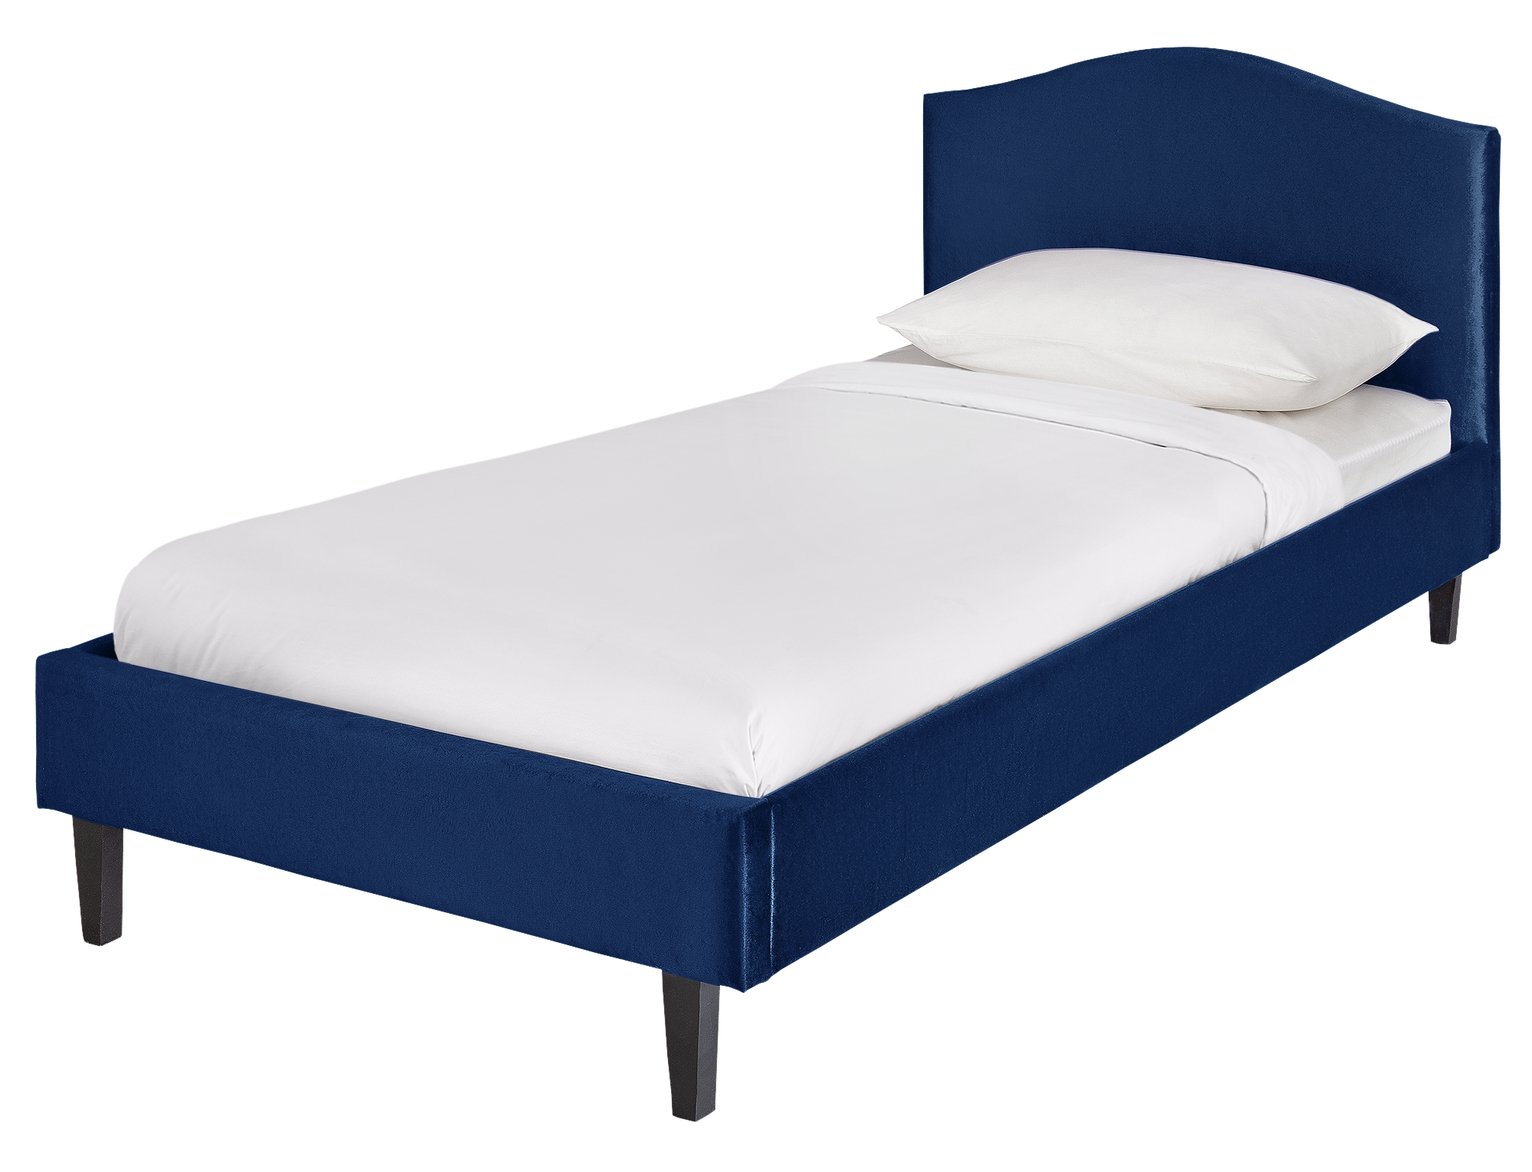 Argos Home Belle Blue Velvet Single Bed Frame review